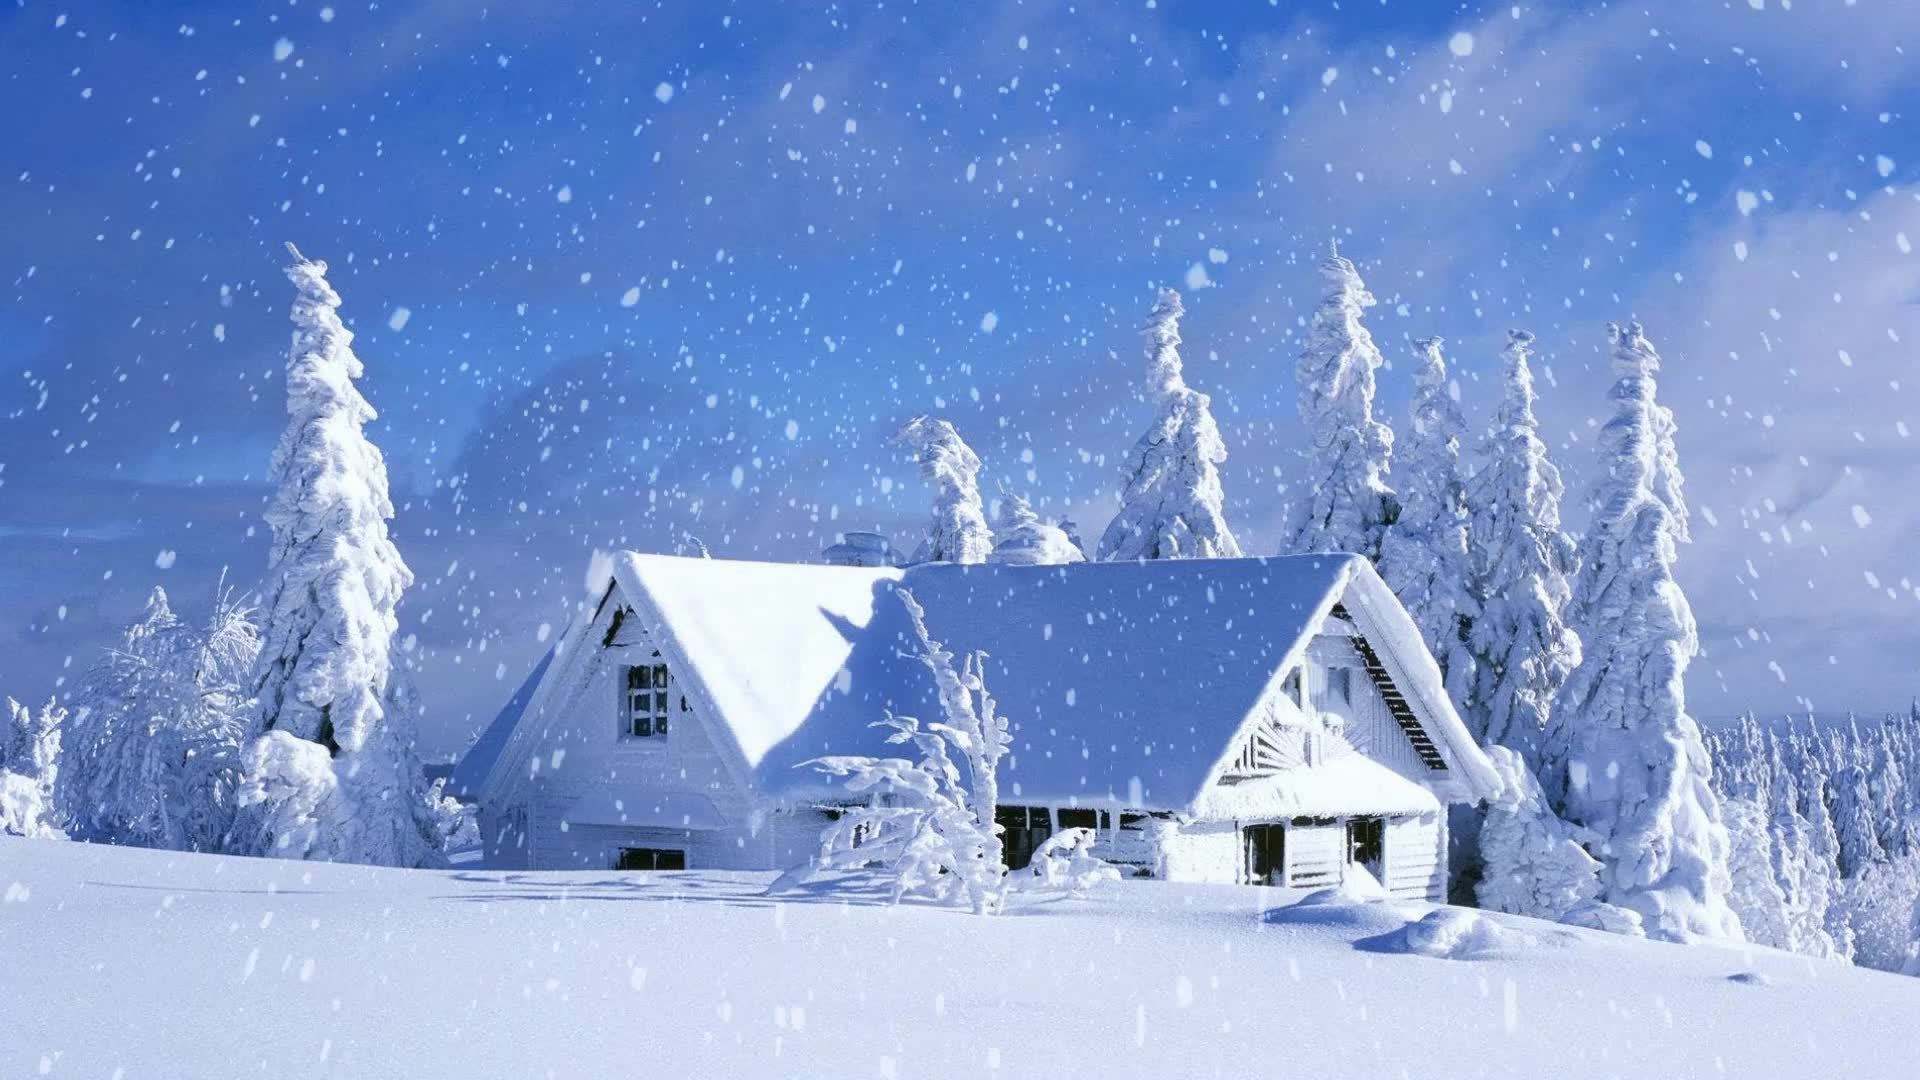 下雪的场景图片 真实图片